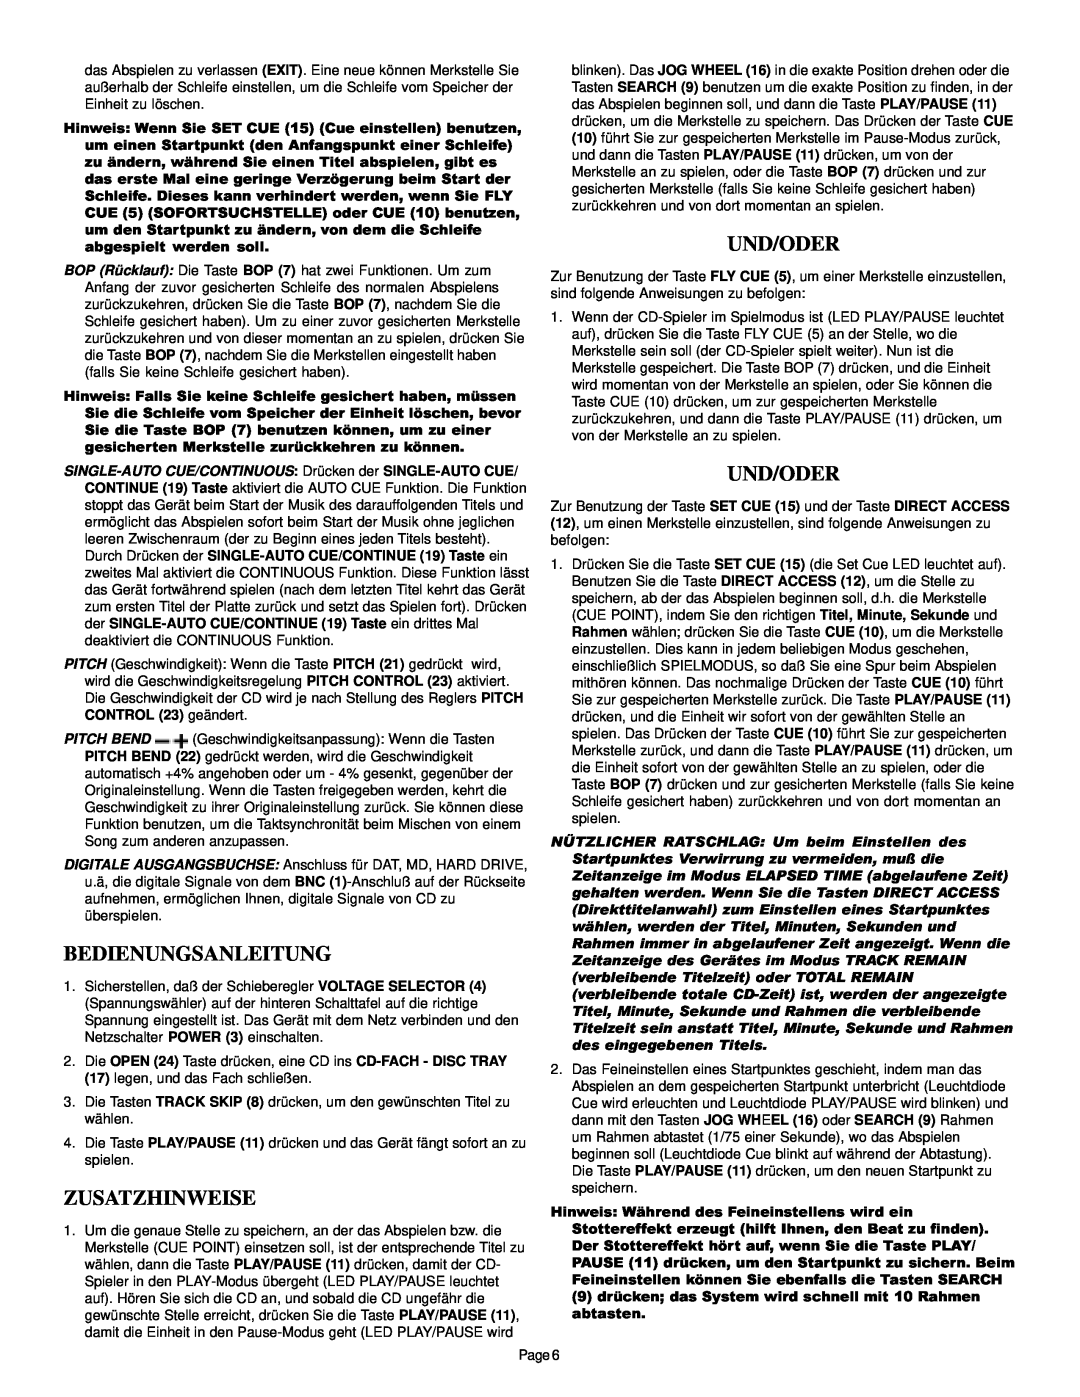 Gemini CDJ-30 manual Bedienungsanleitung, Zusatzhinweise, Und/Oder 